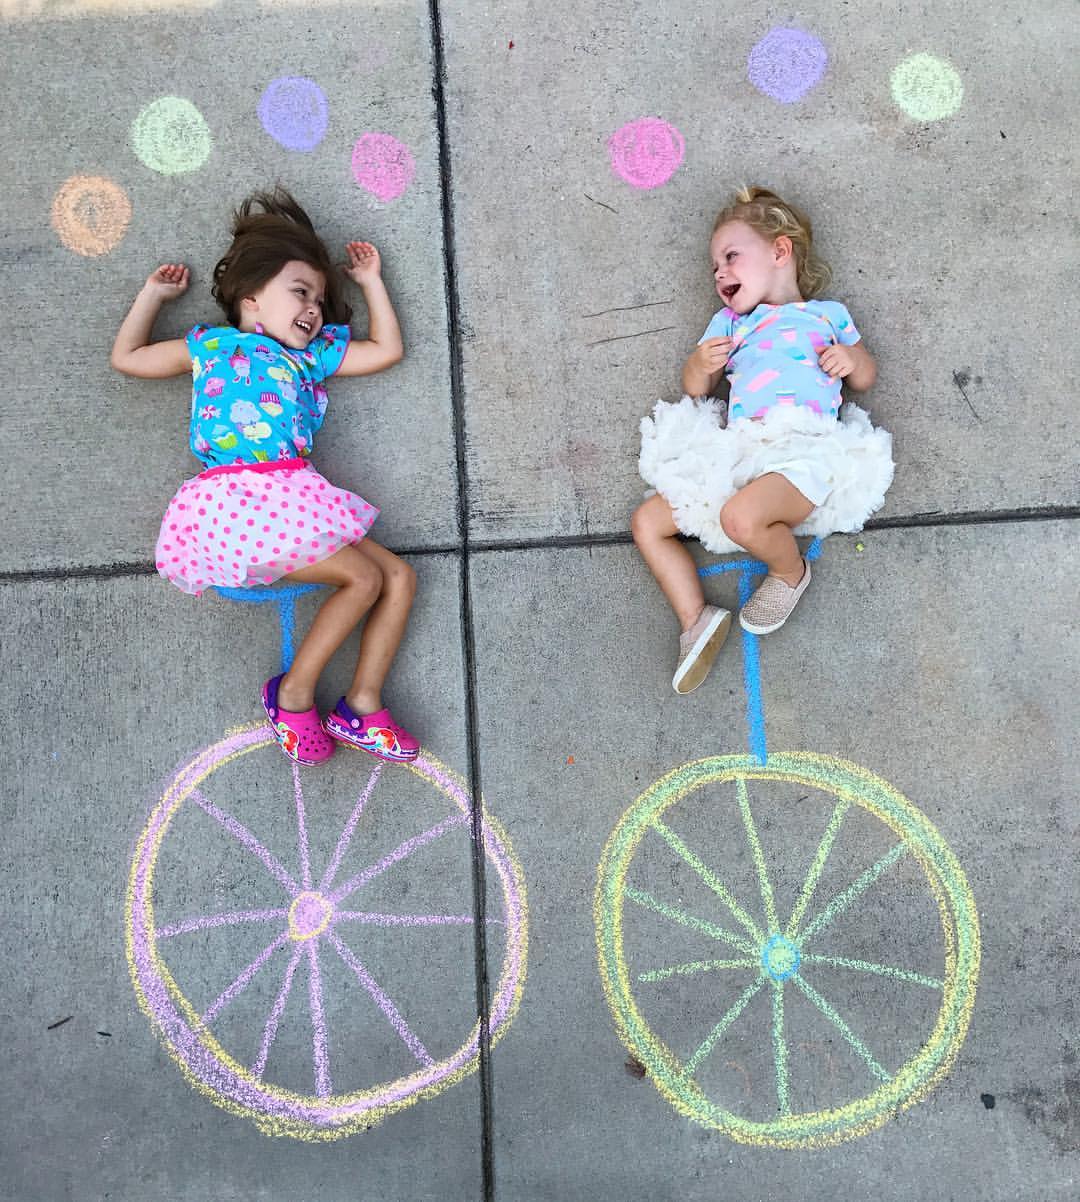 little girls having fun with sidewalk chalk art drawings